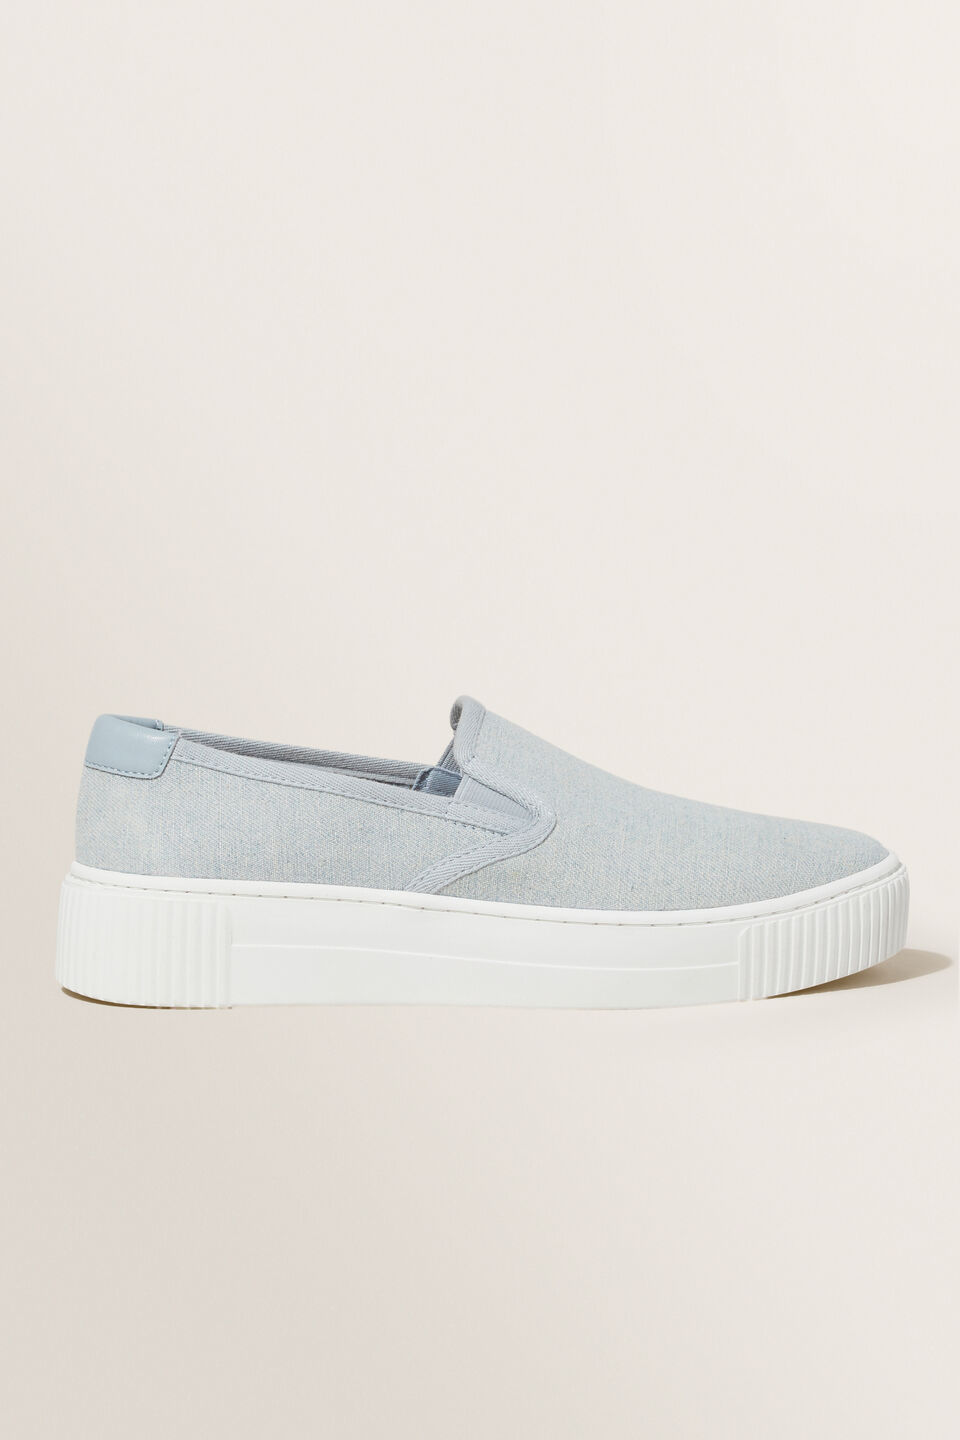 Zoey Slip On Sneaker  Pale Blue Wash